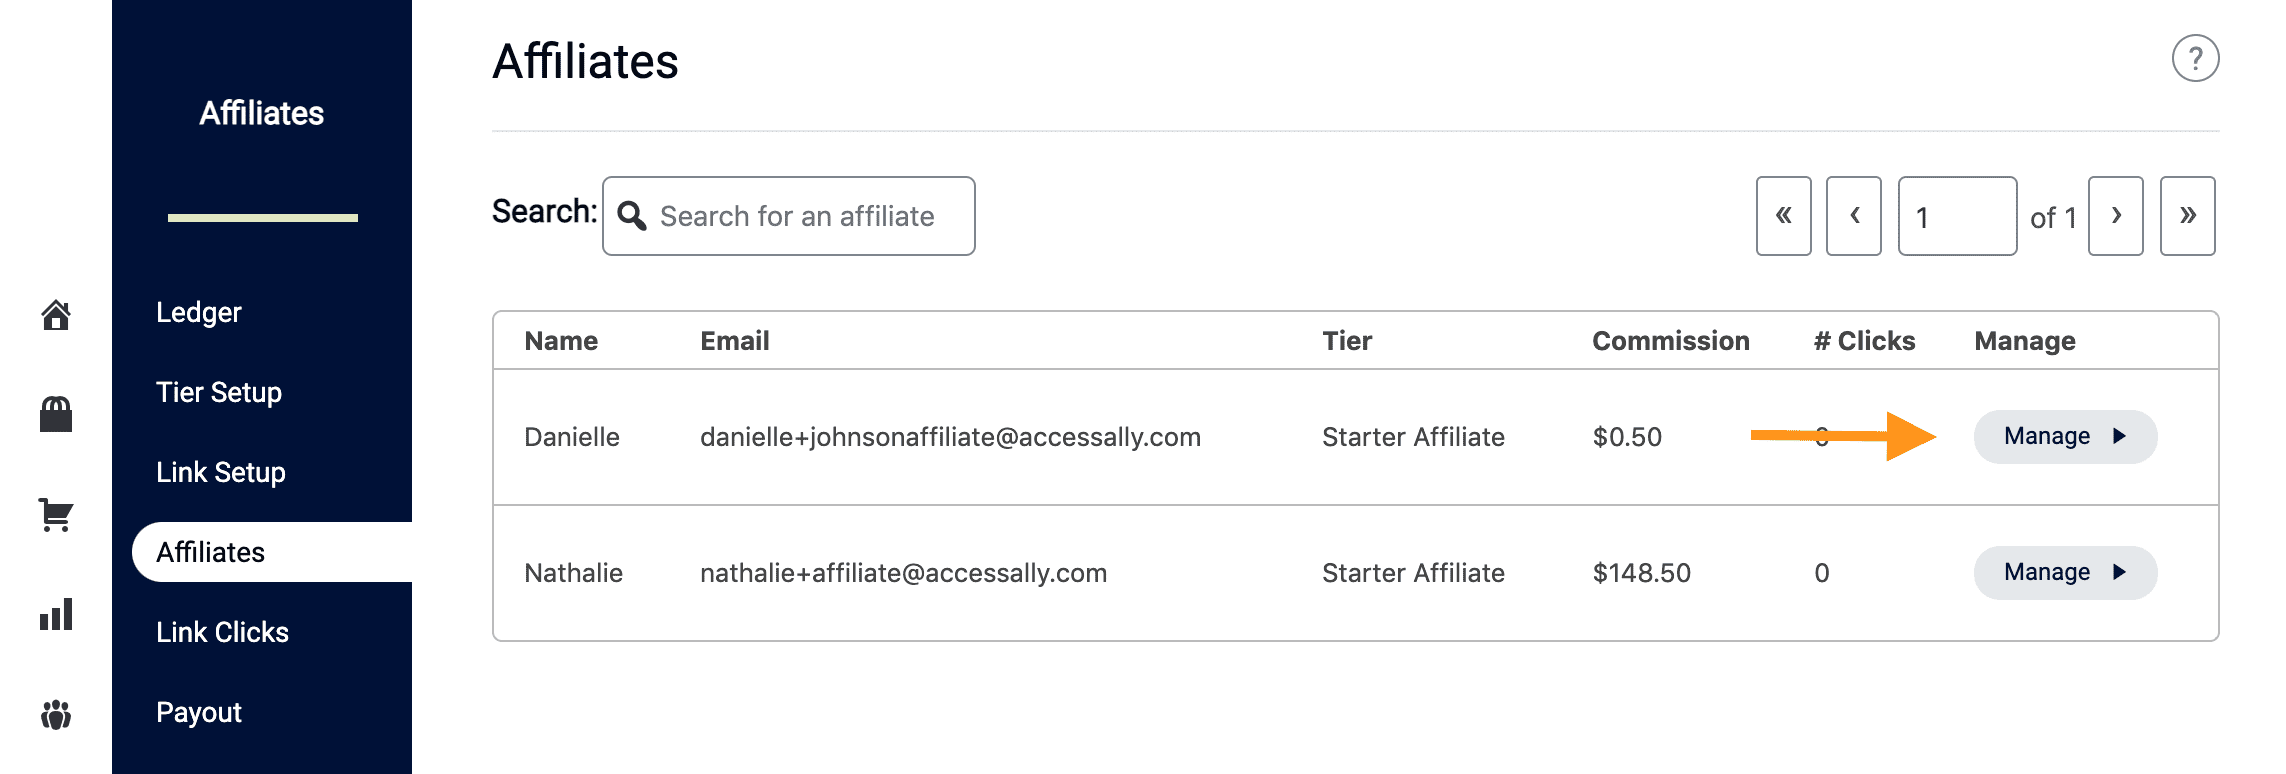 manage affiliate details button